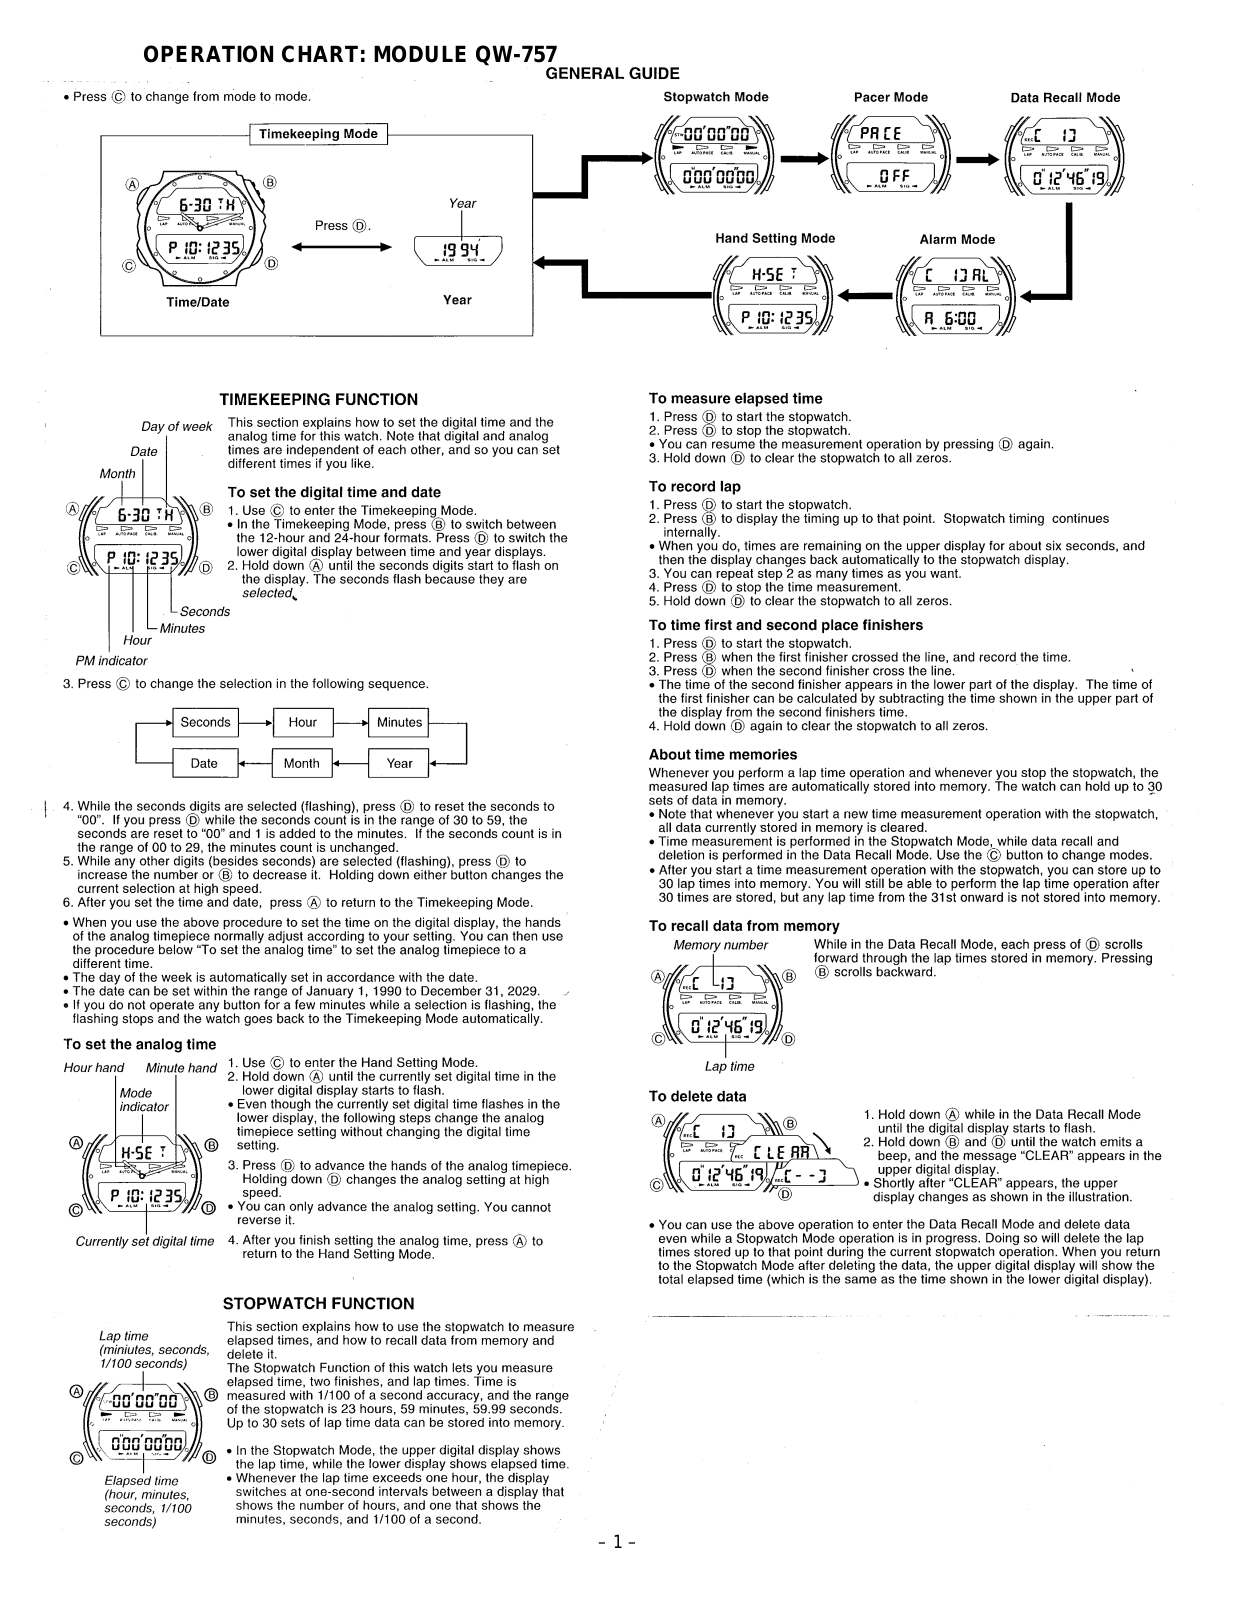 Casio 757 Owner's Manual